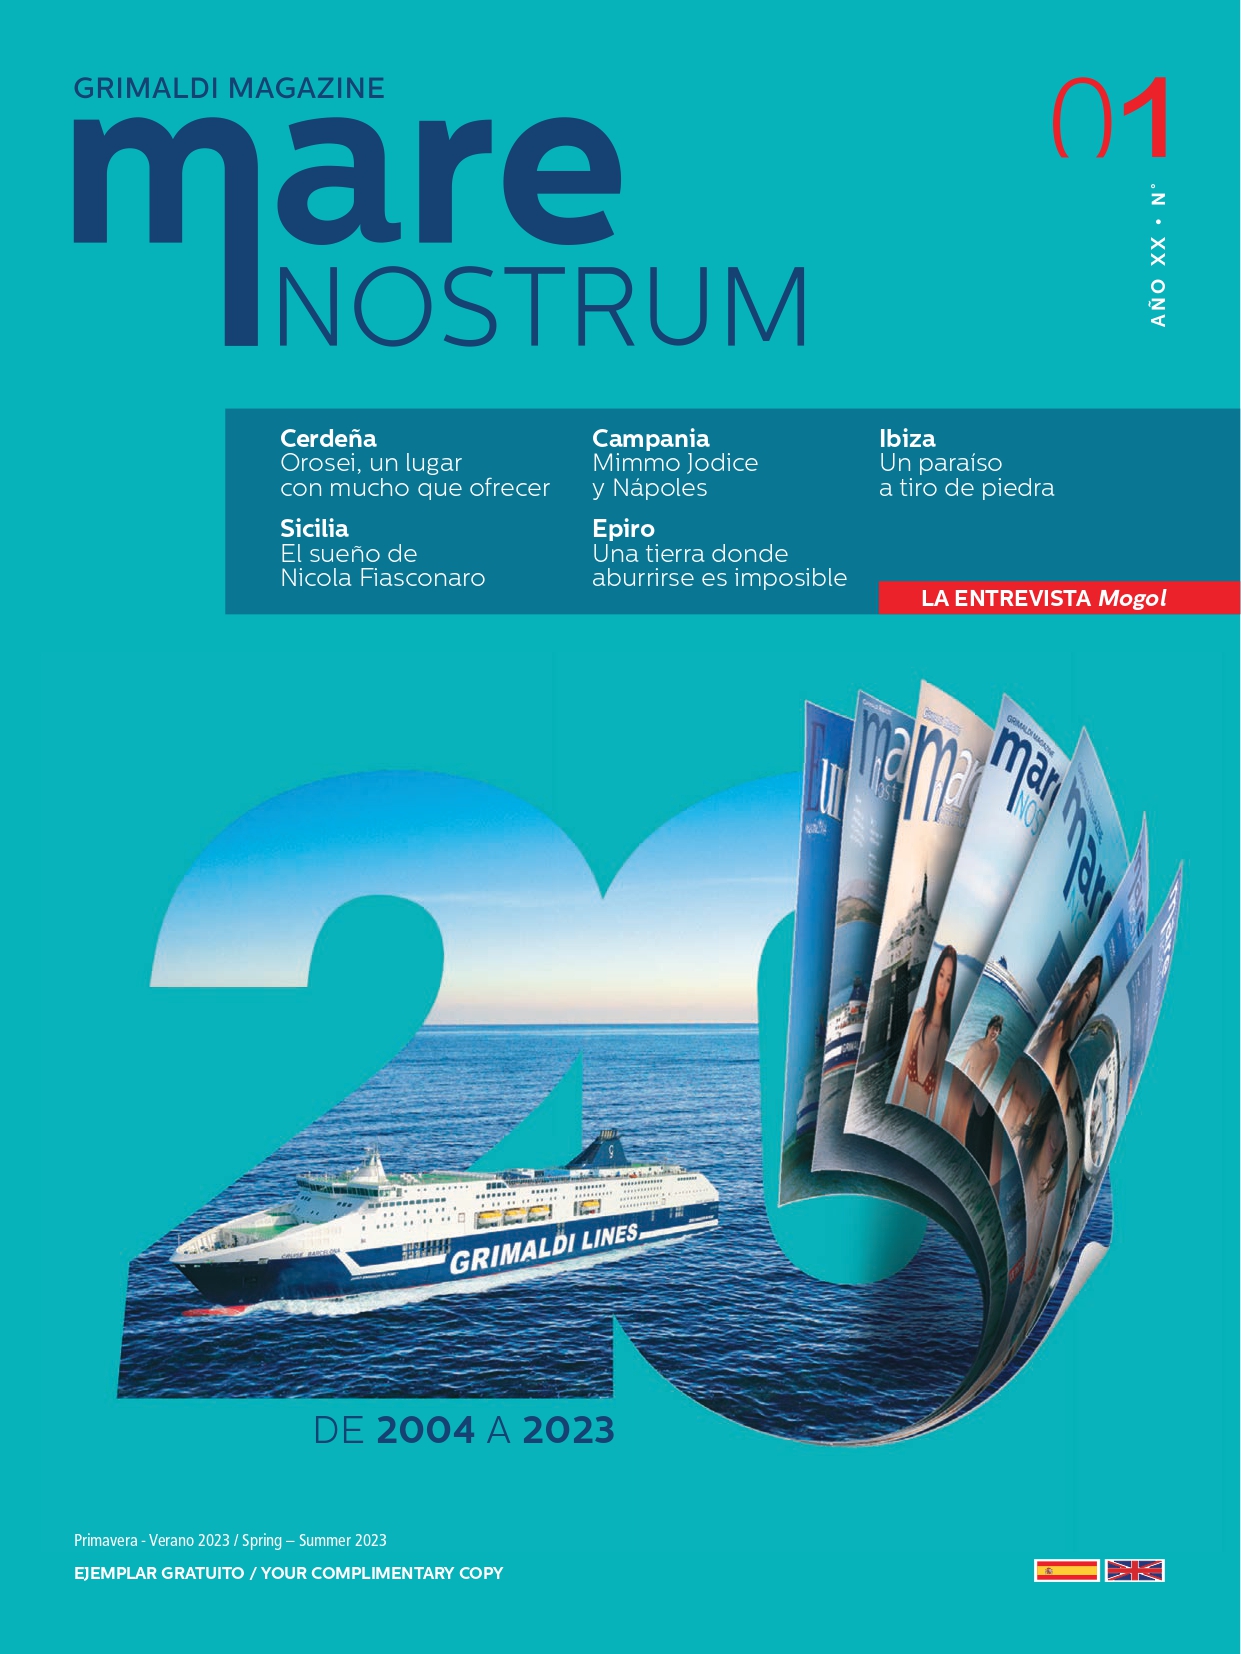 Grimaldi Magazine Mare Nostrum (Year XX n. 1) Spanish-English